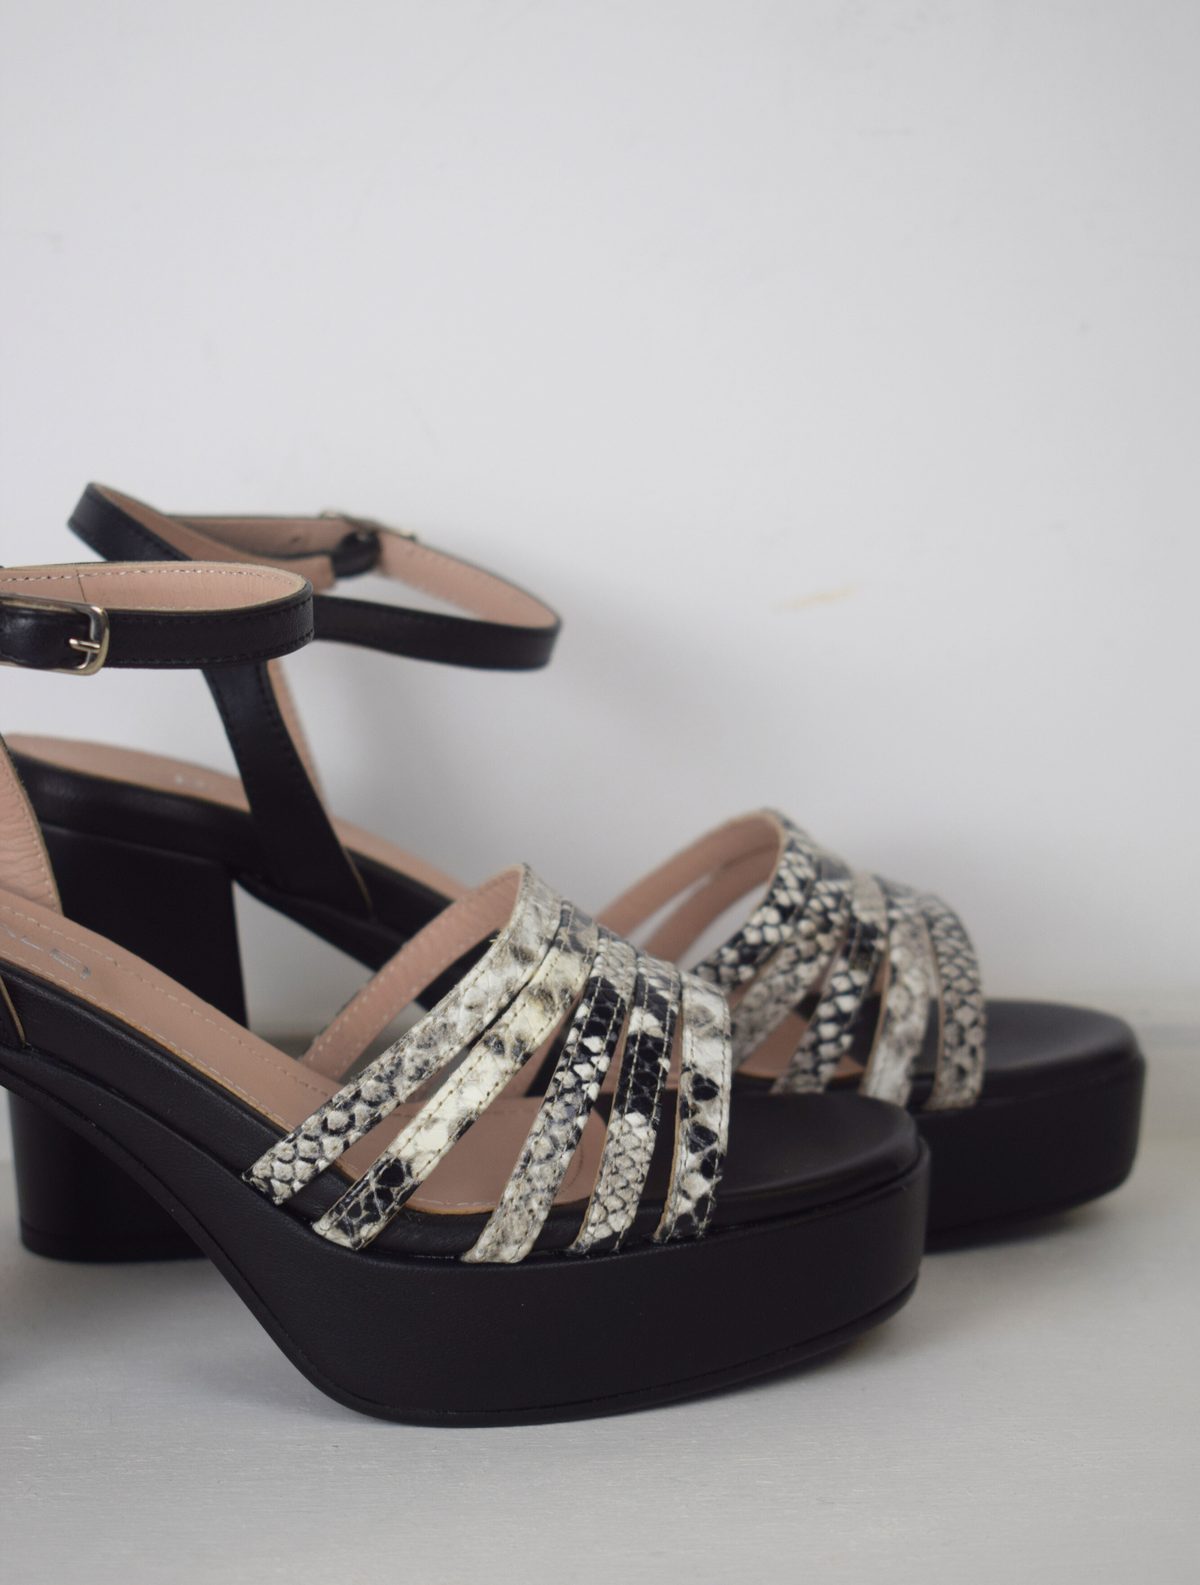 Black platform heel with snake skin straps 